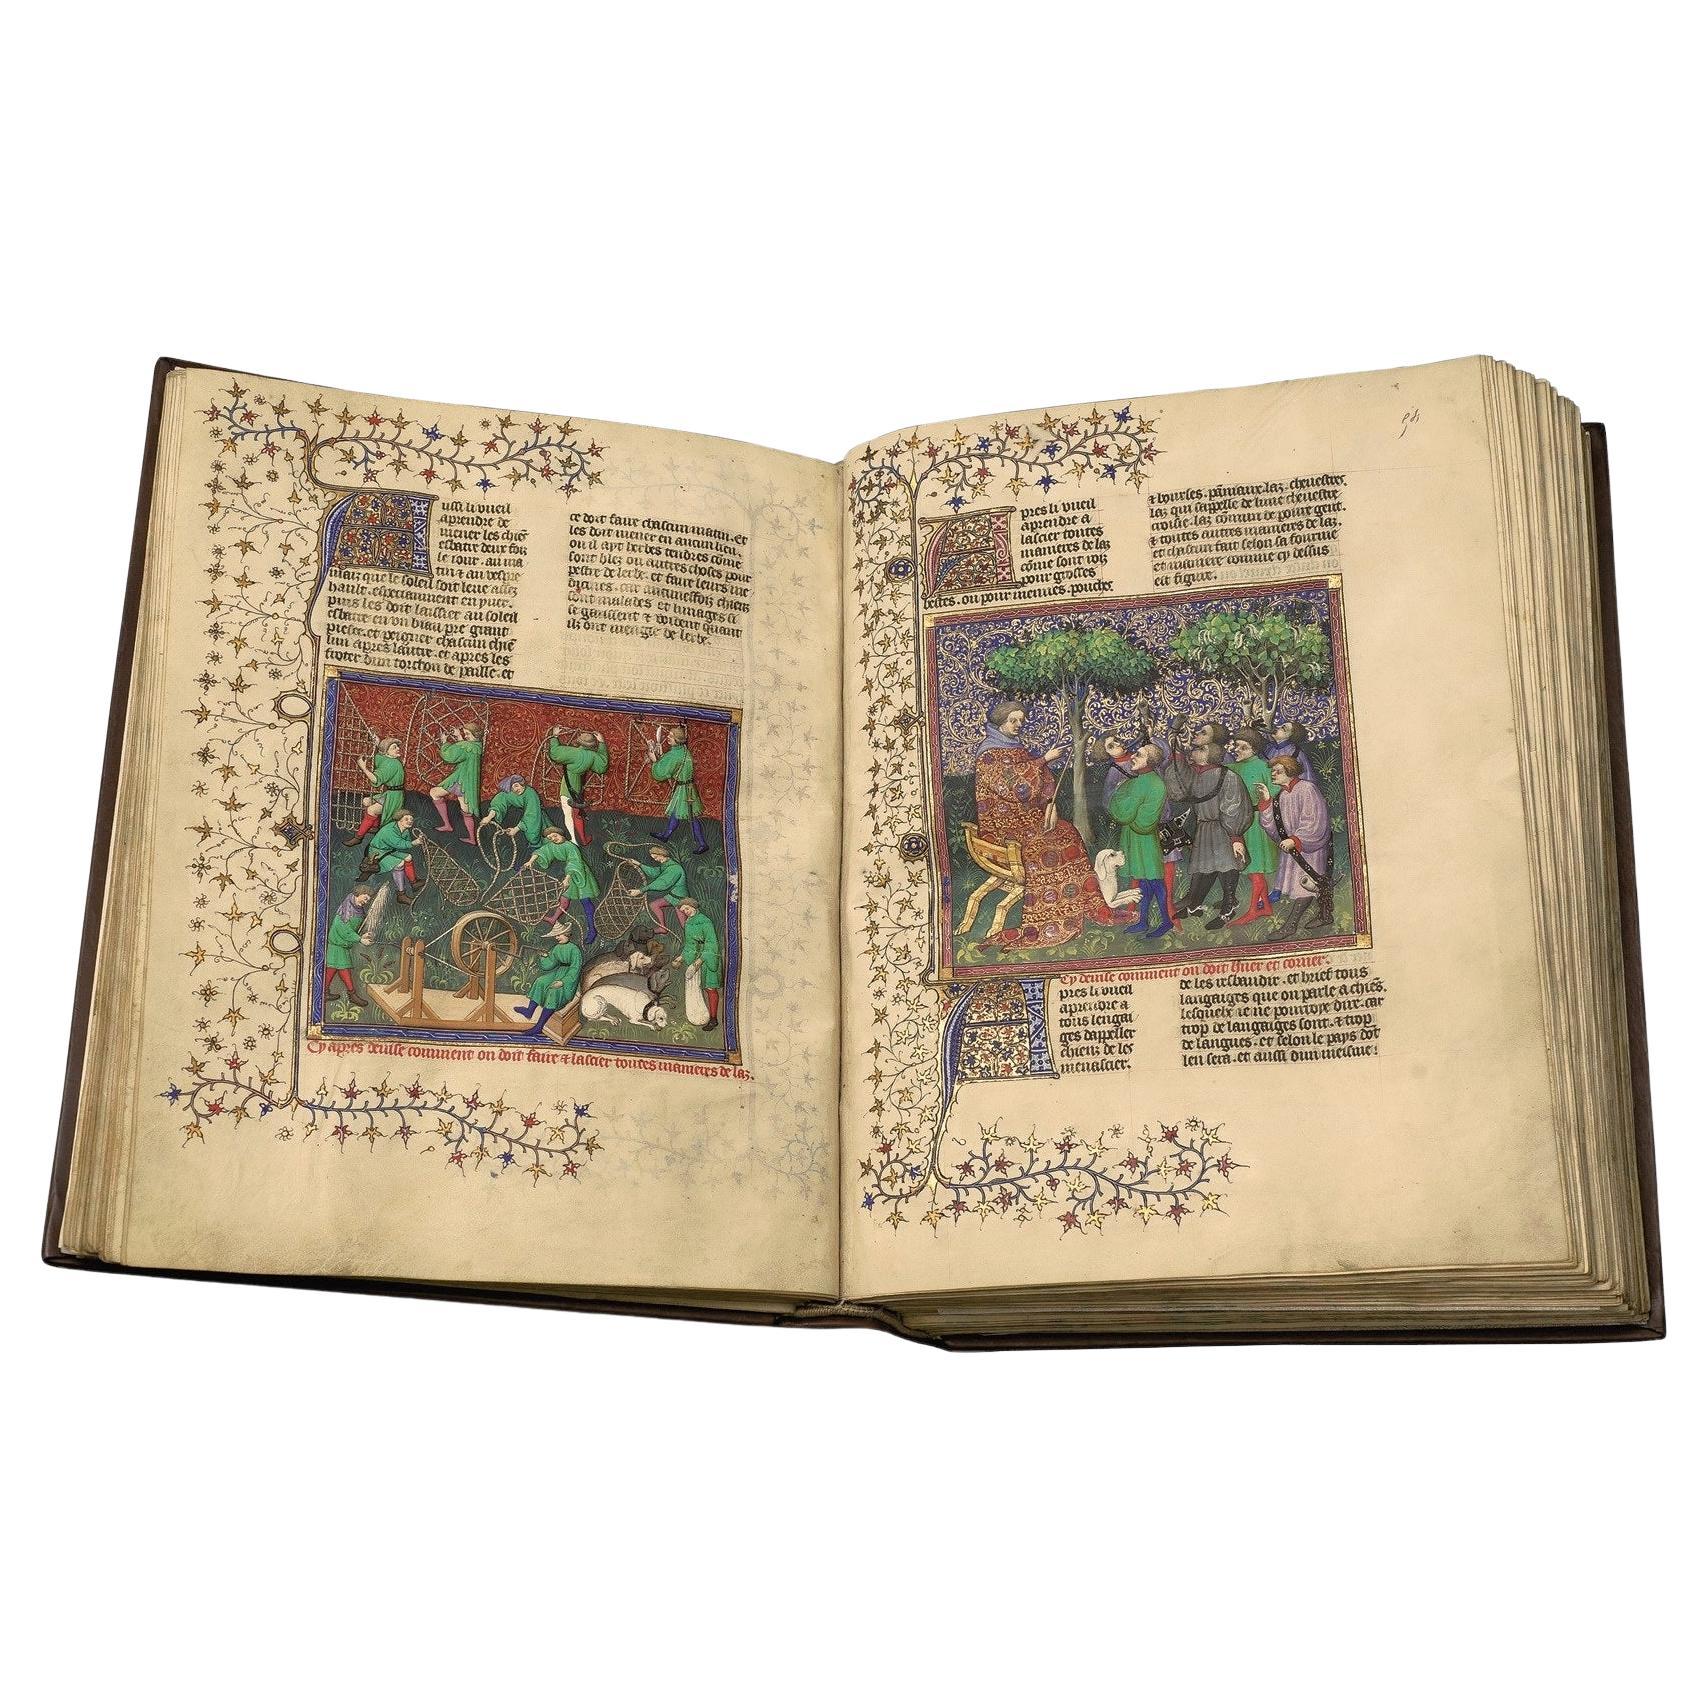 Es handelt sich um eine einmalige, auf 987 Exemplare limitierte Faksimile-Ausgabe eines mittelalterlichen illuminierten Manuskripts, des Buches der Jagd des französischen Adligen Gaston Fébus, das sich im Besitz der Bibliothèque nationale de France